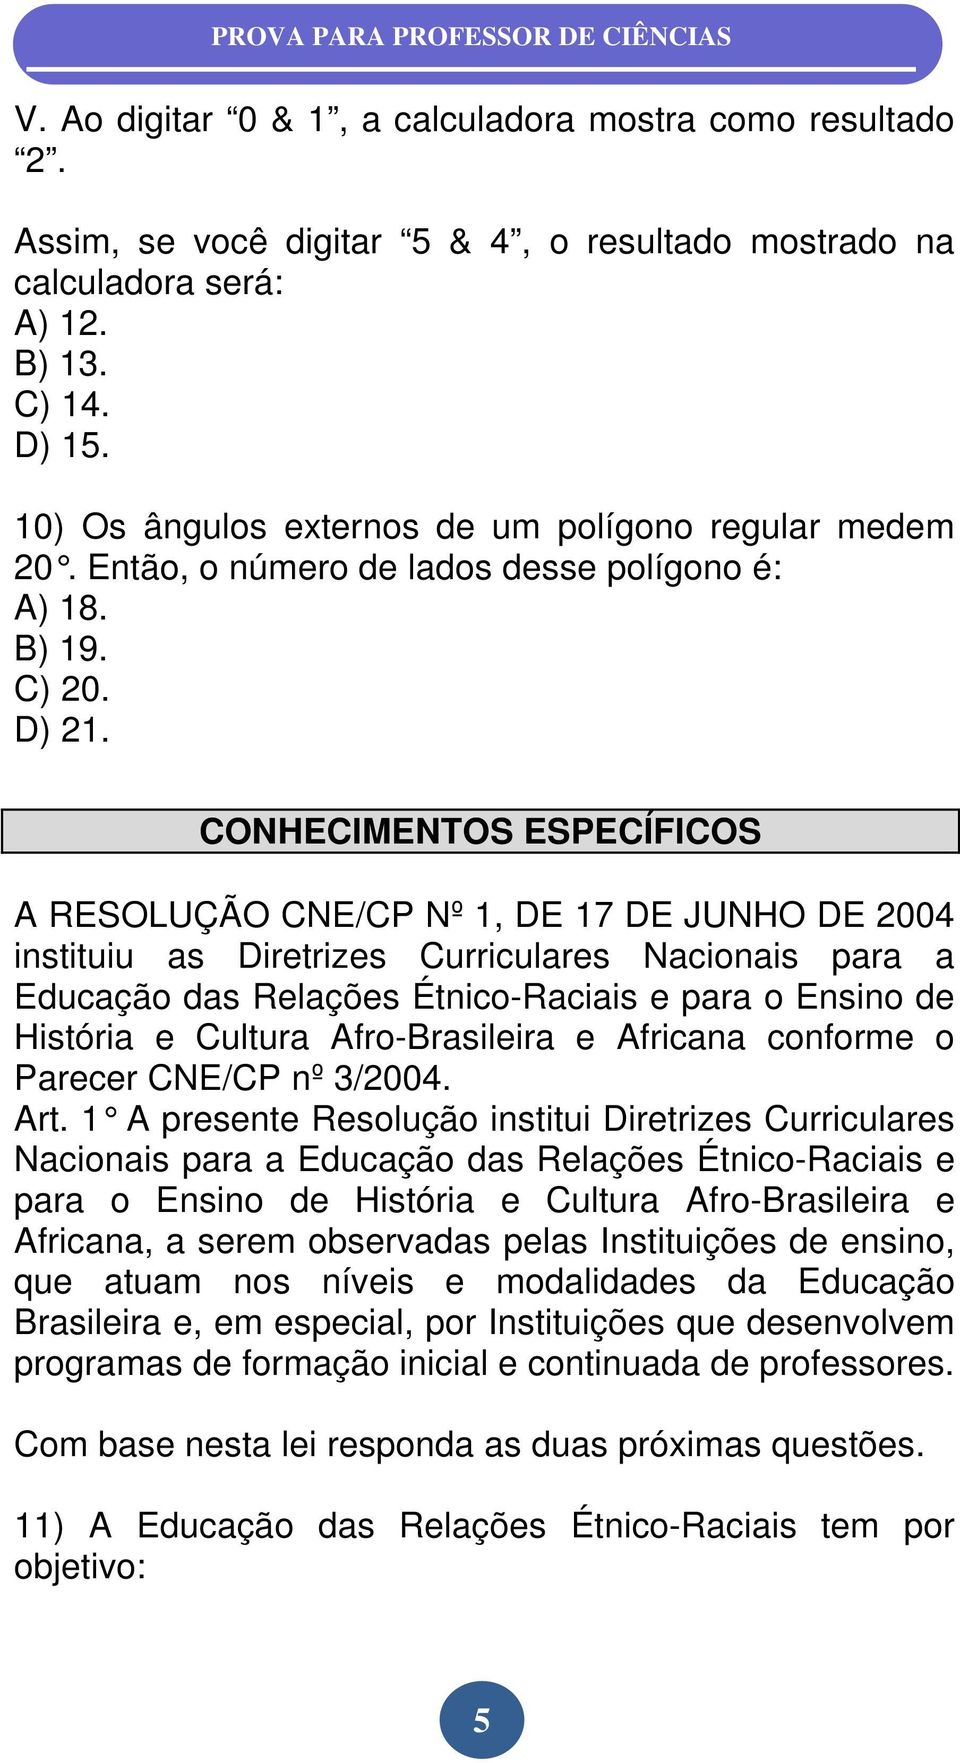 CONHECIMENTOS ESPECÍFICOS A RESOLUÇÃO CNE/CP Nº 1, DE 17 DE JUNHO DE 2004 instituiu as Diretrizes Curriculares Nacionais para a Educação das Relações Étnico-Raciais e para o Ensino de História e